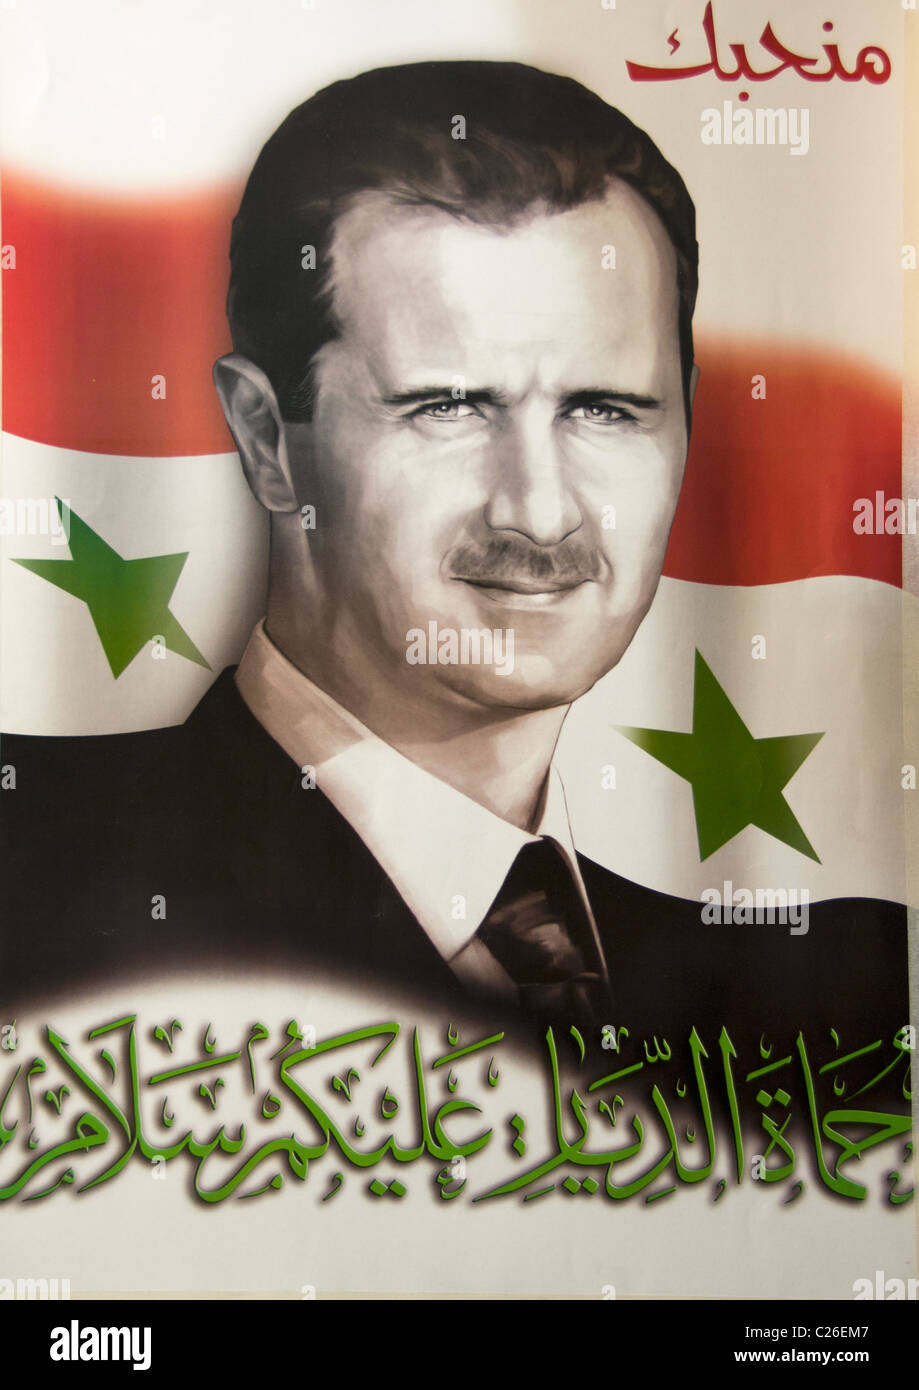 Syria Pro Demonstration 2011 President Bashar Al Assad Aleppo Stock Photo